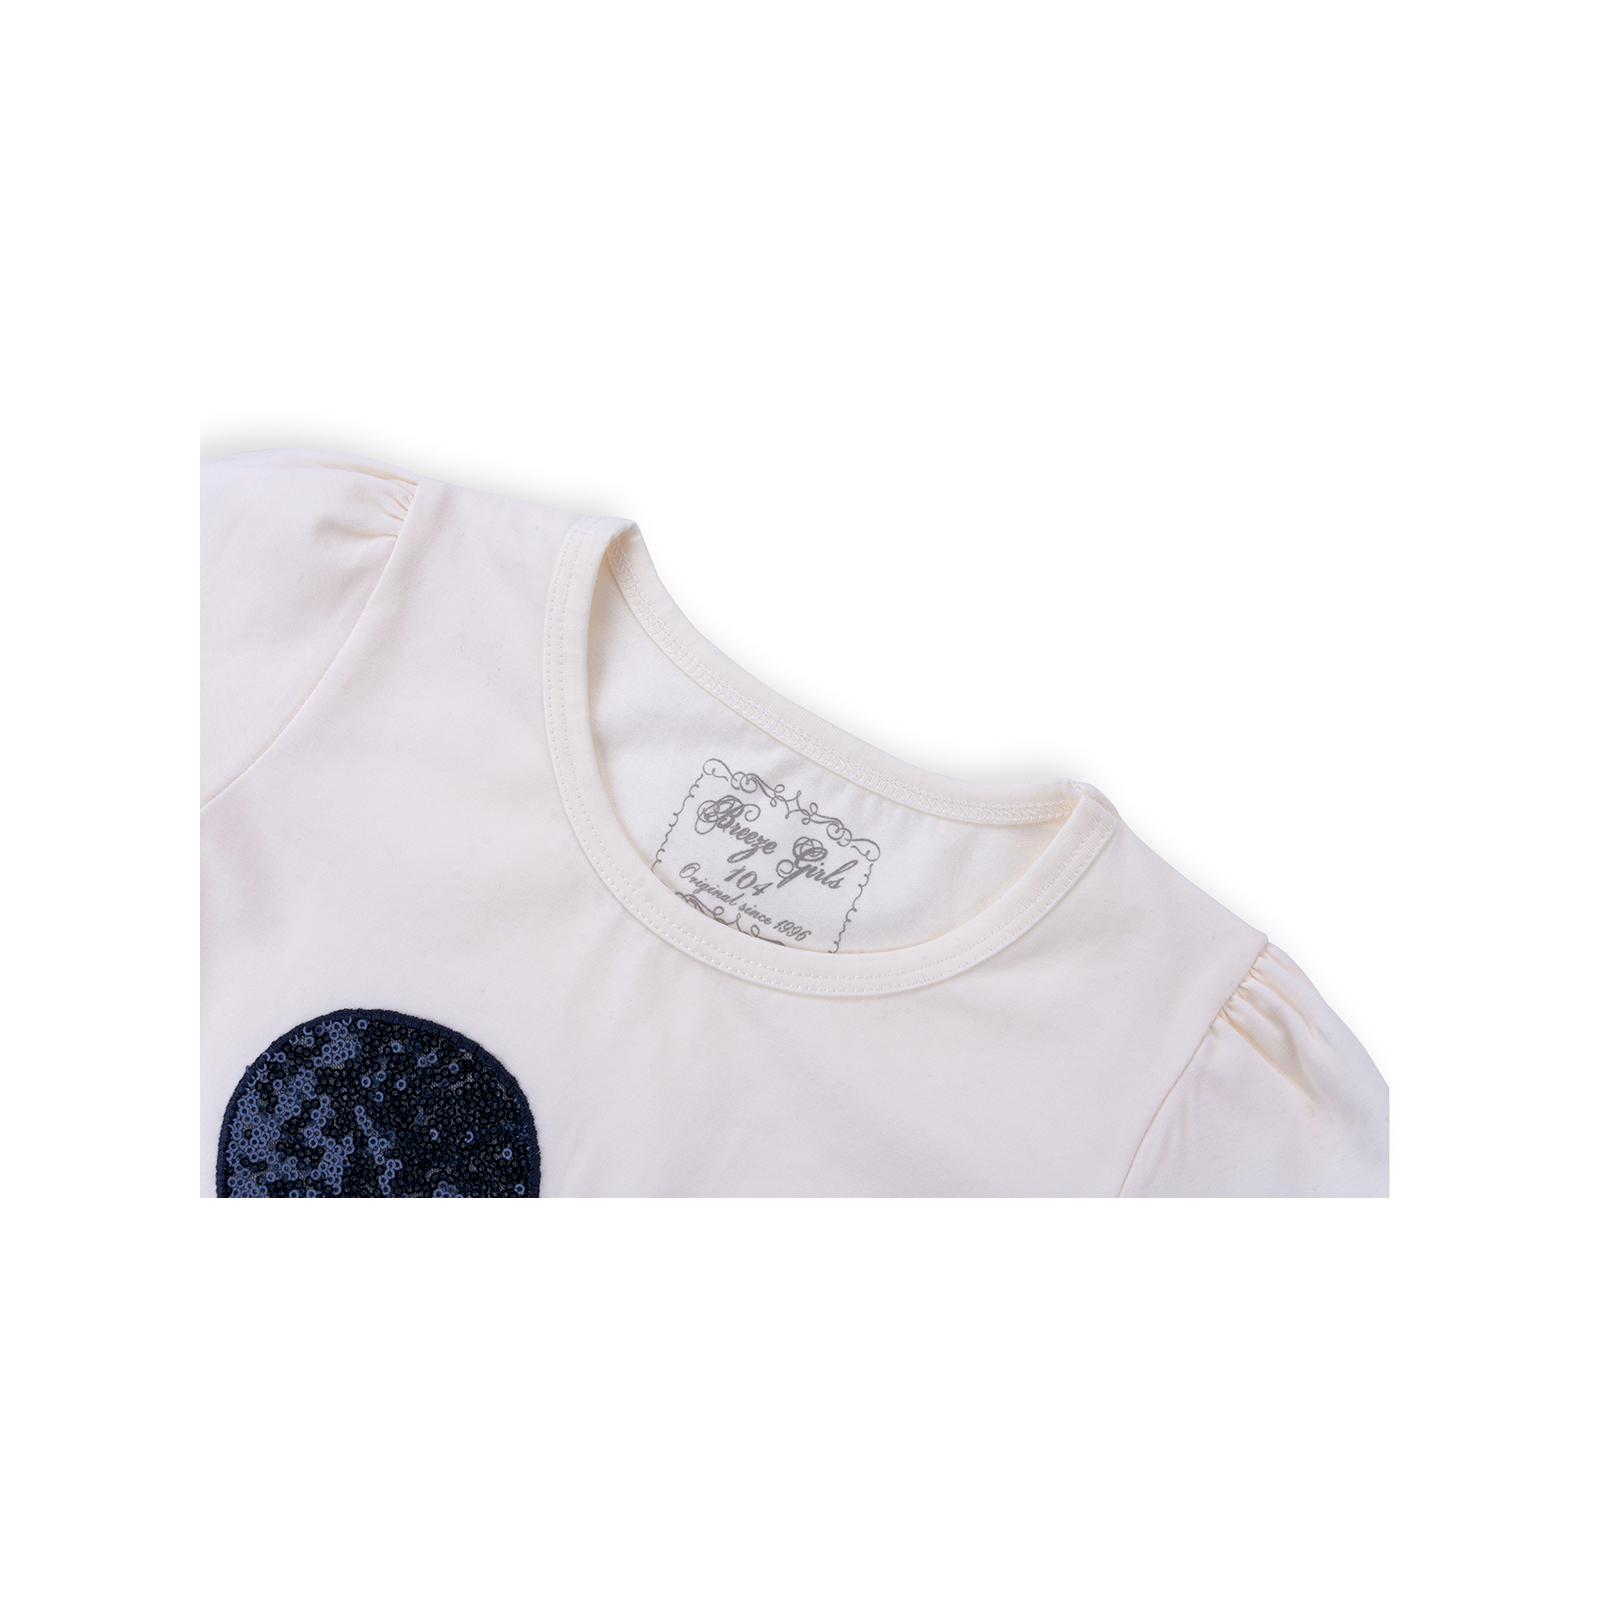 Набор детской одежды Breeze футболка с бабочкой со штанишками (8969-110G-cream) изображение 4